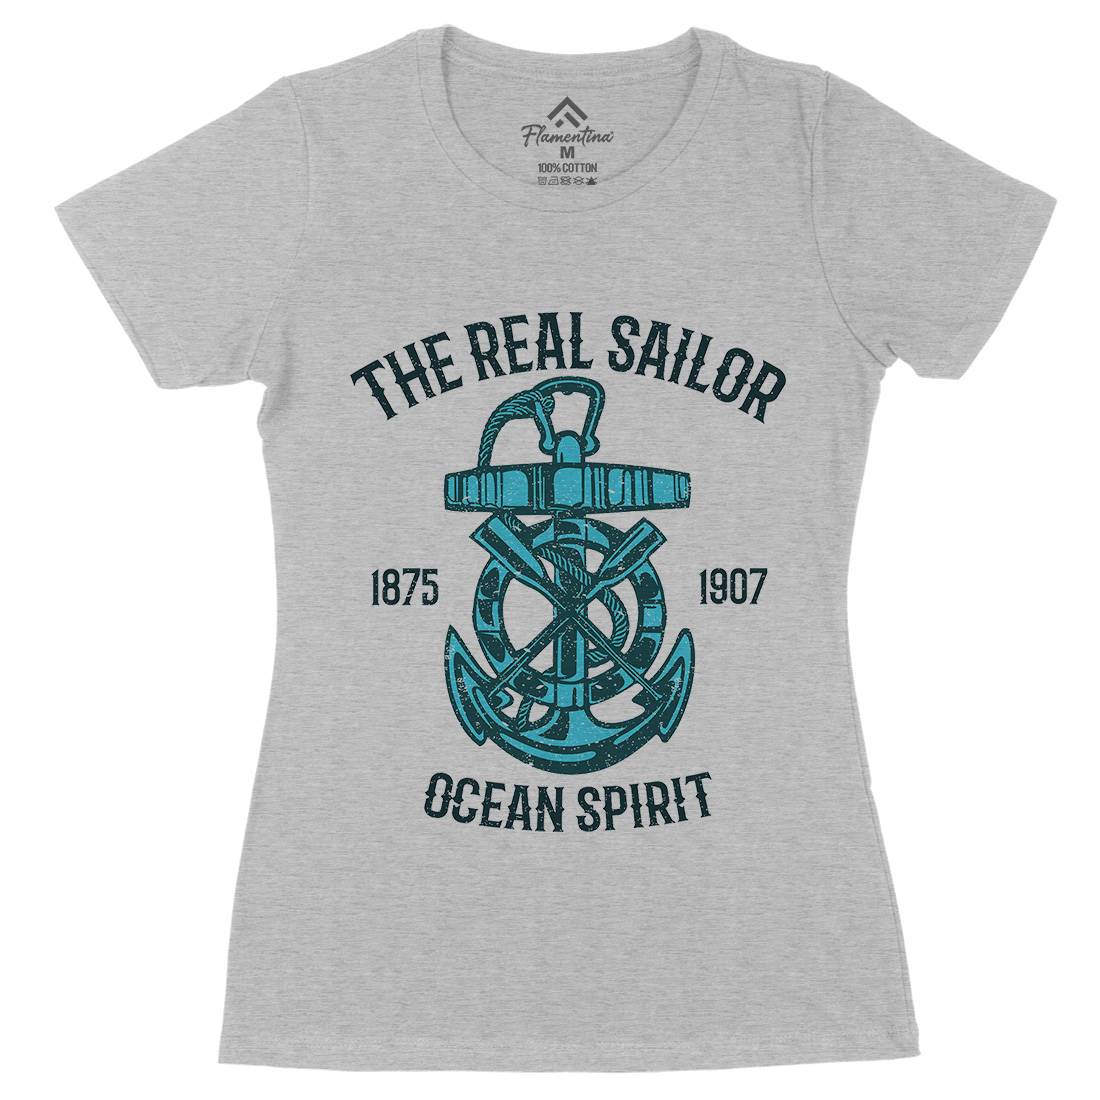 Ocean Spirit Womens Organic Crew Neck T-Shirt Navy A097